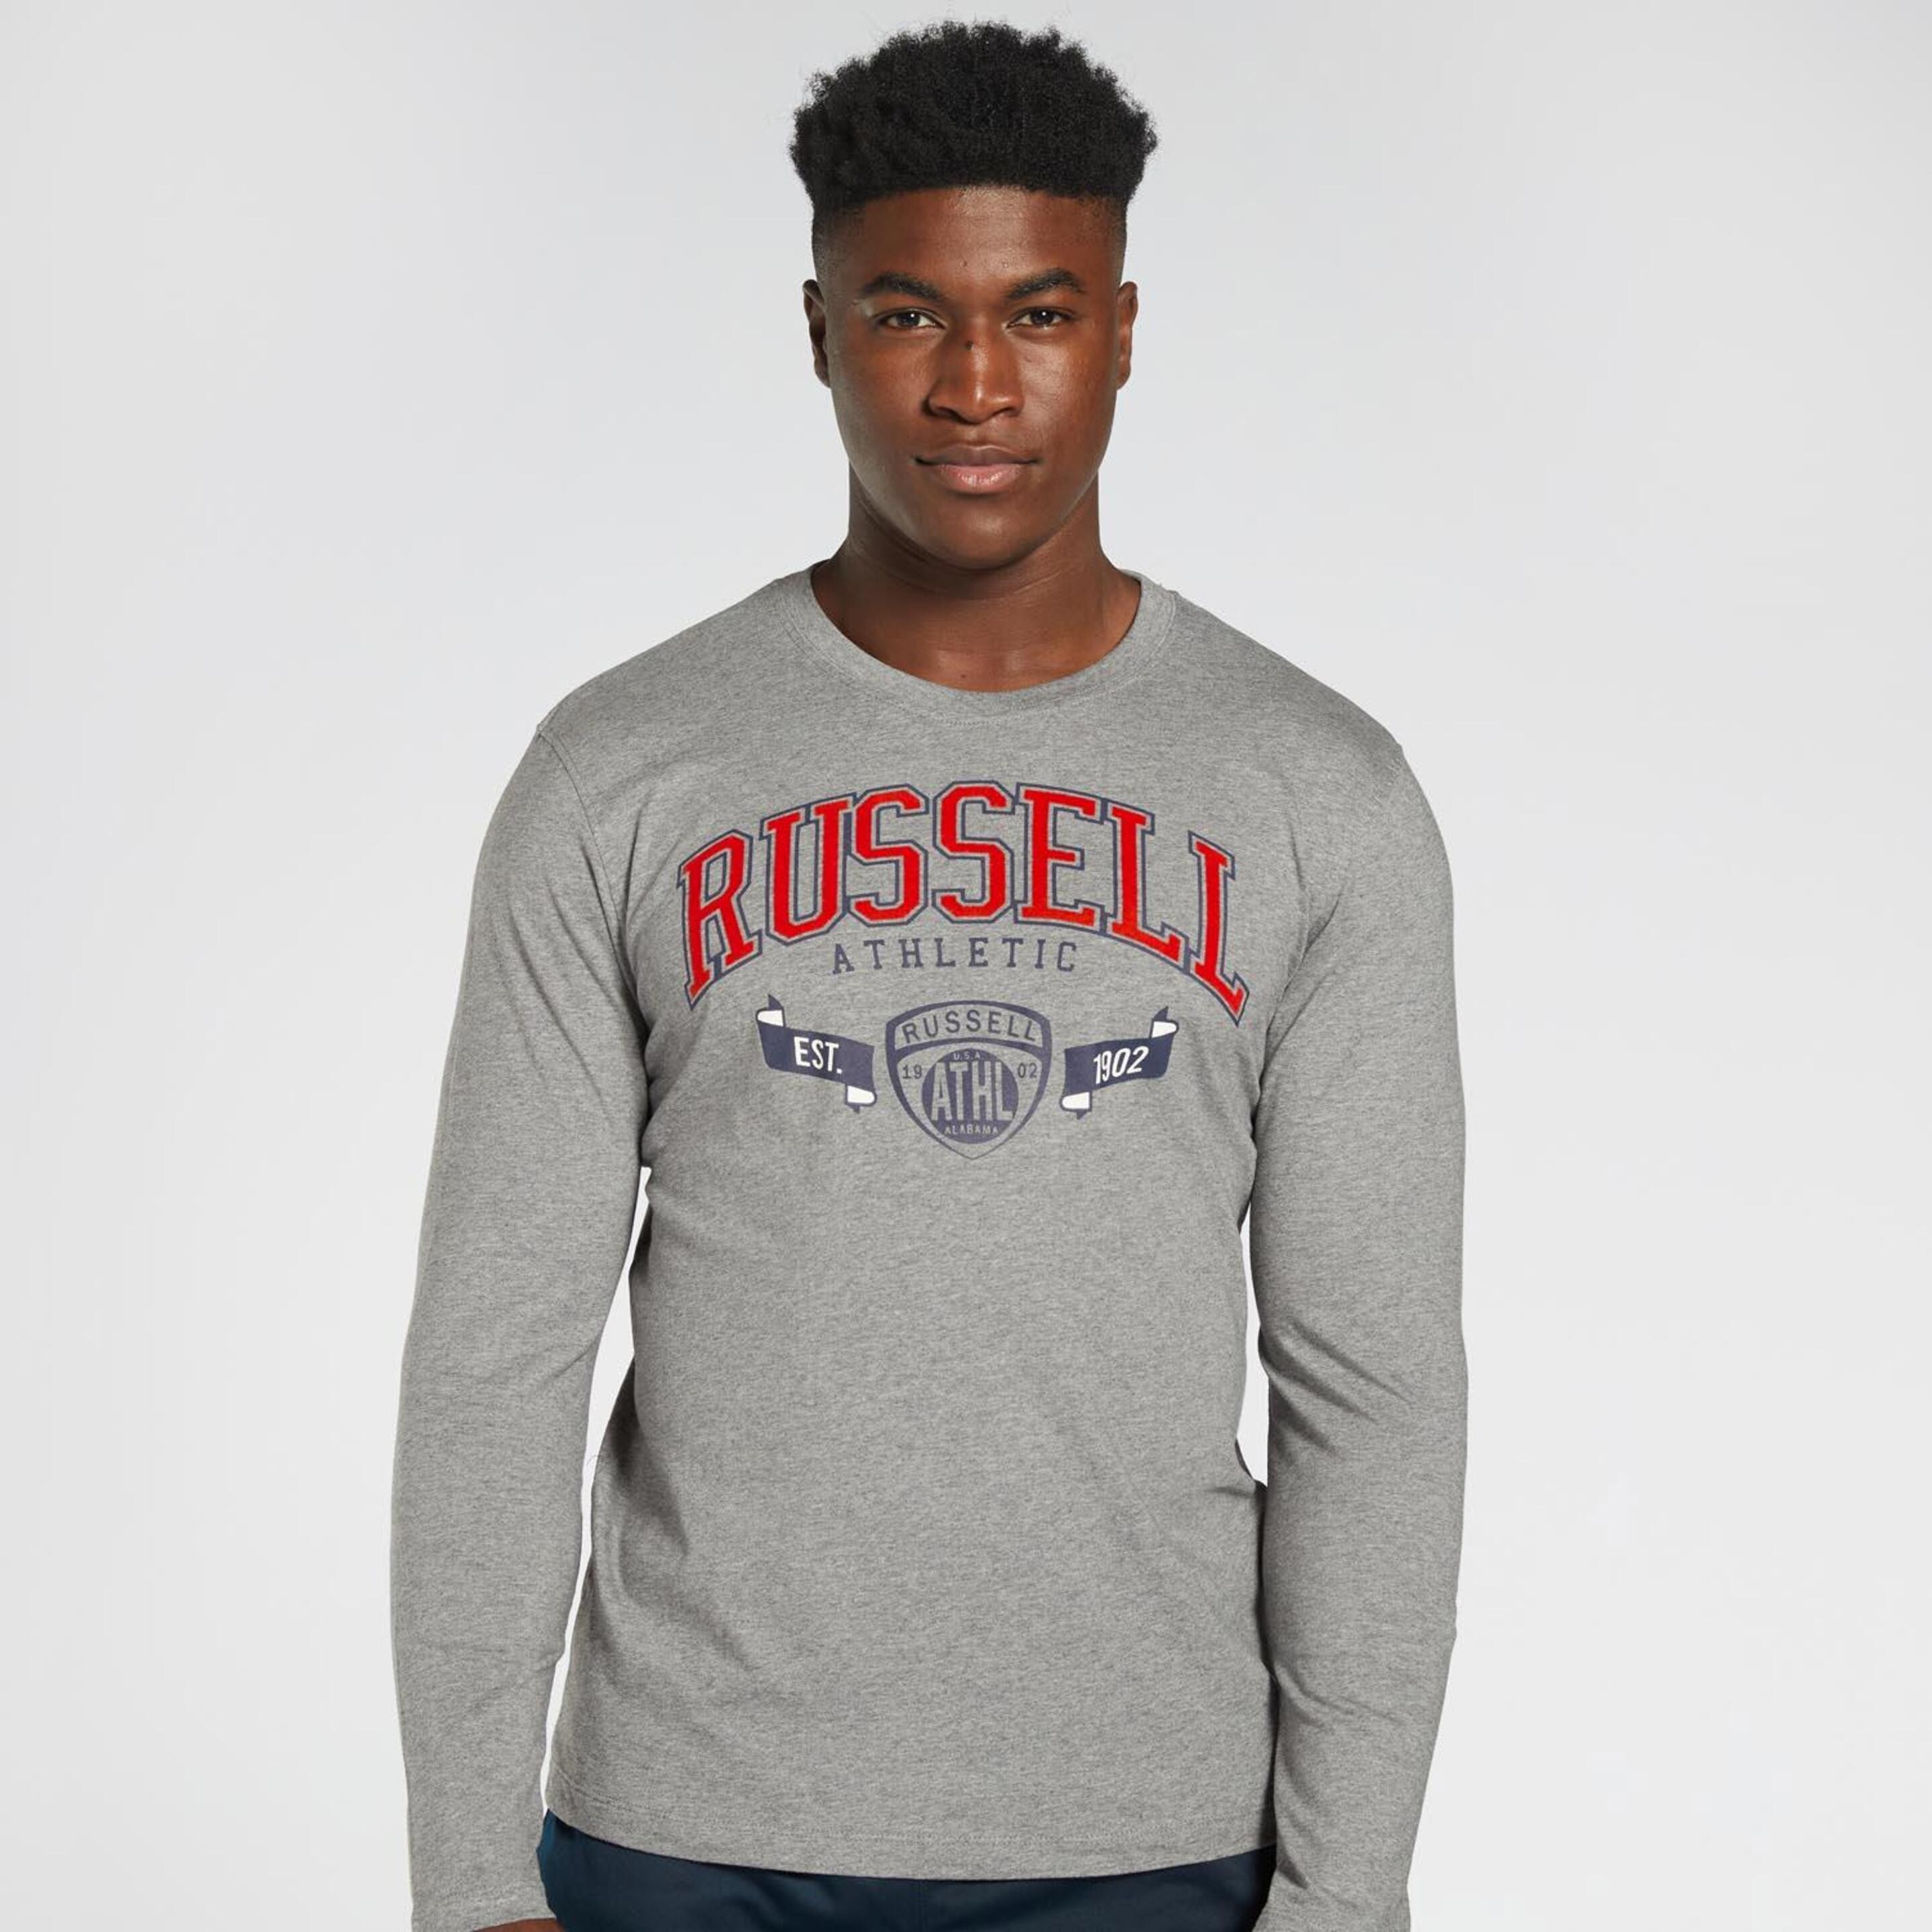 Russell Athletic Collegiate